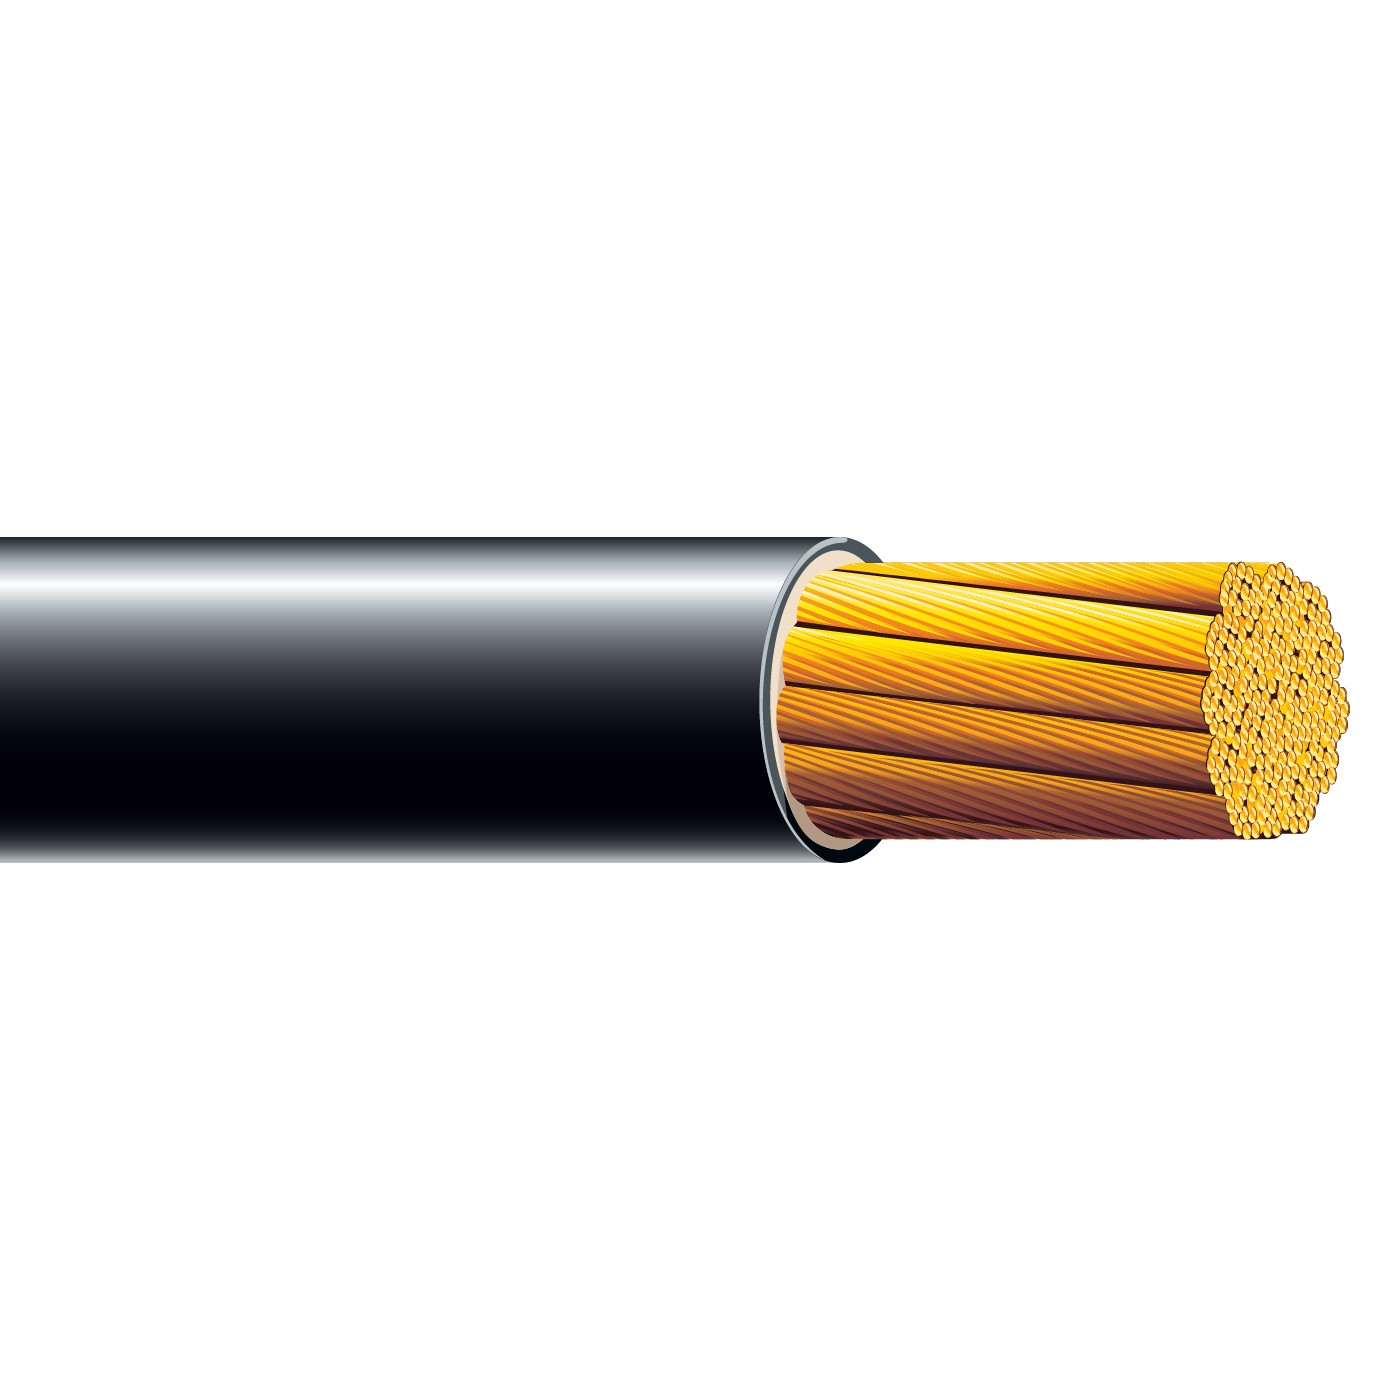 HO5V2-K/HO7V2-K (318*Y) – Heat resistant cable